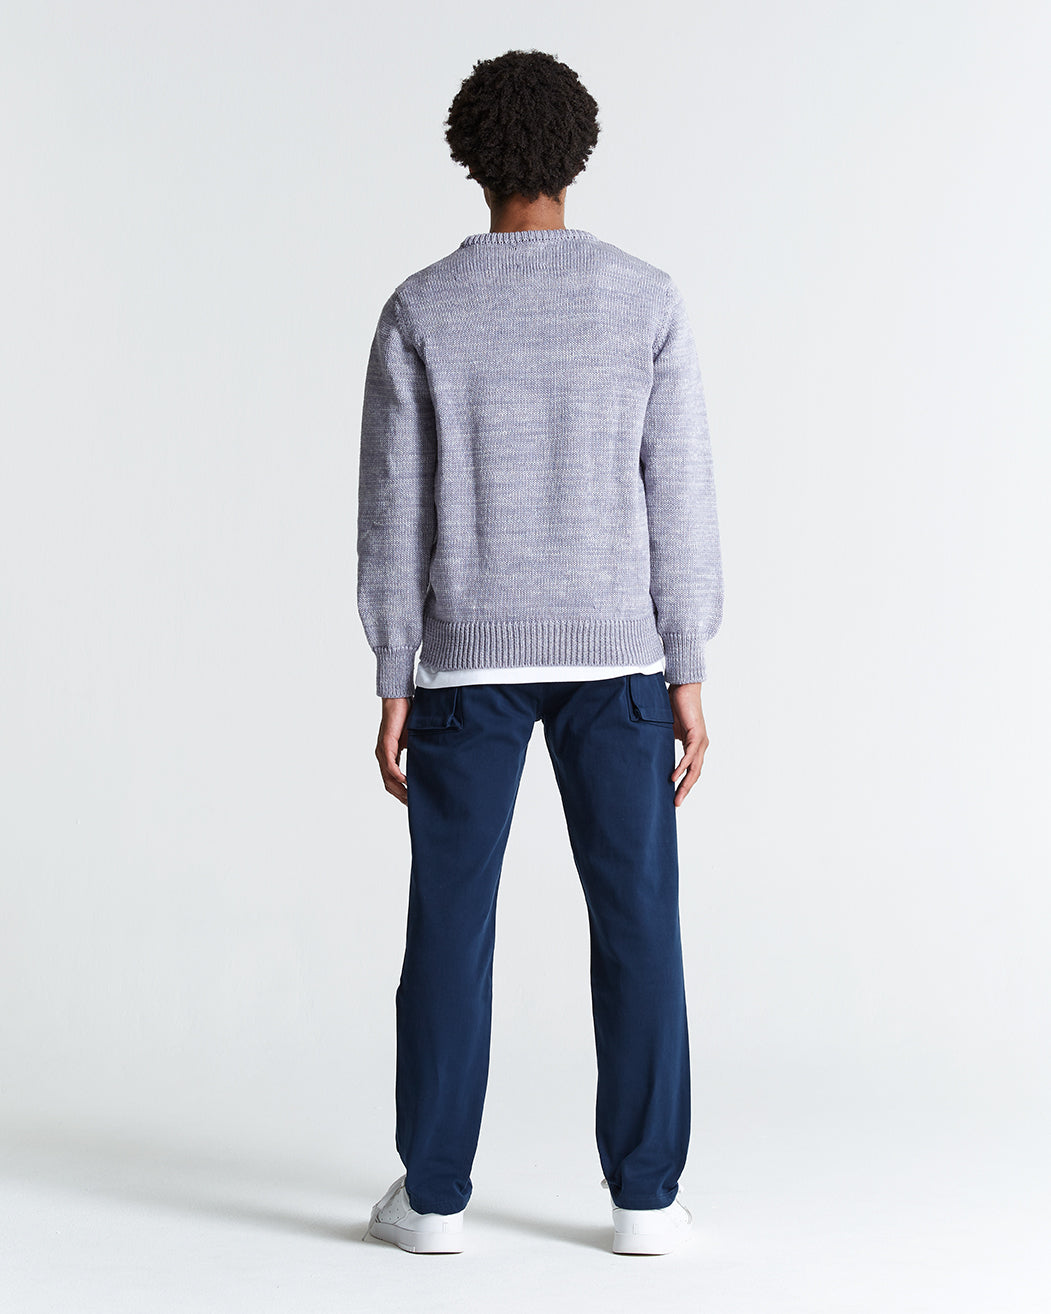 1kg Wool & Linen Sweater in Gull & Ecru